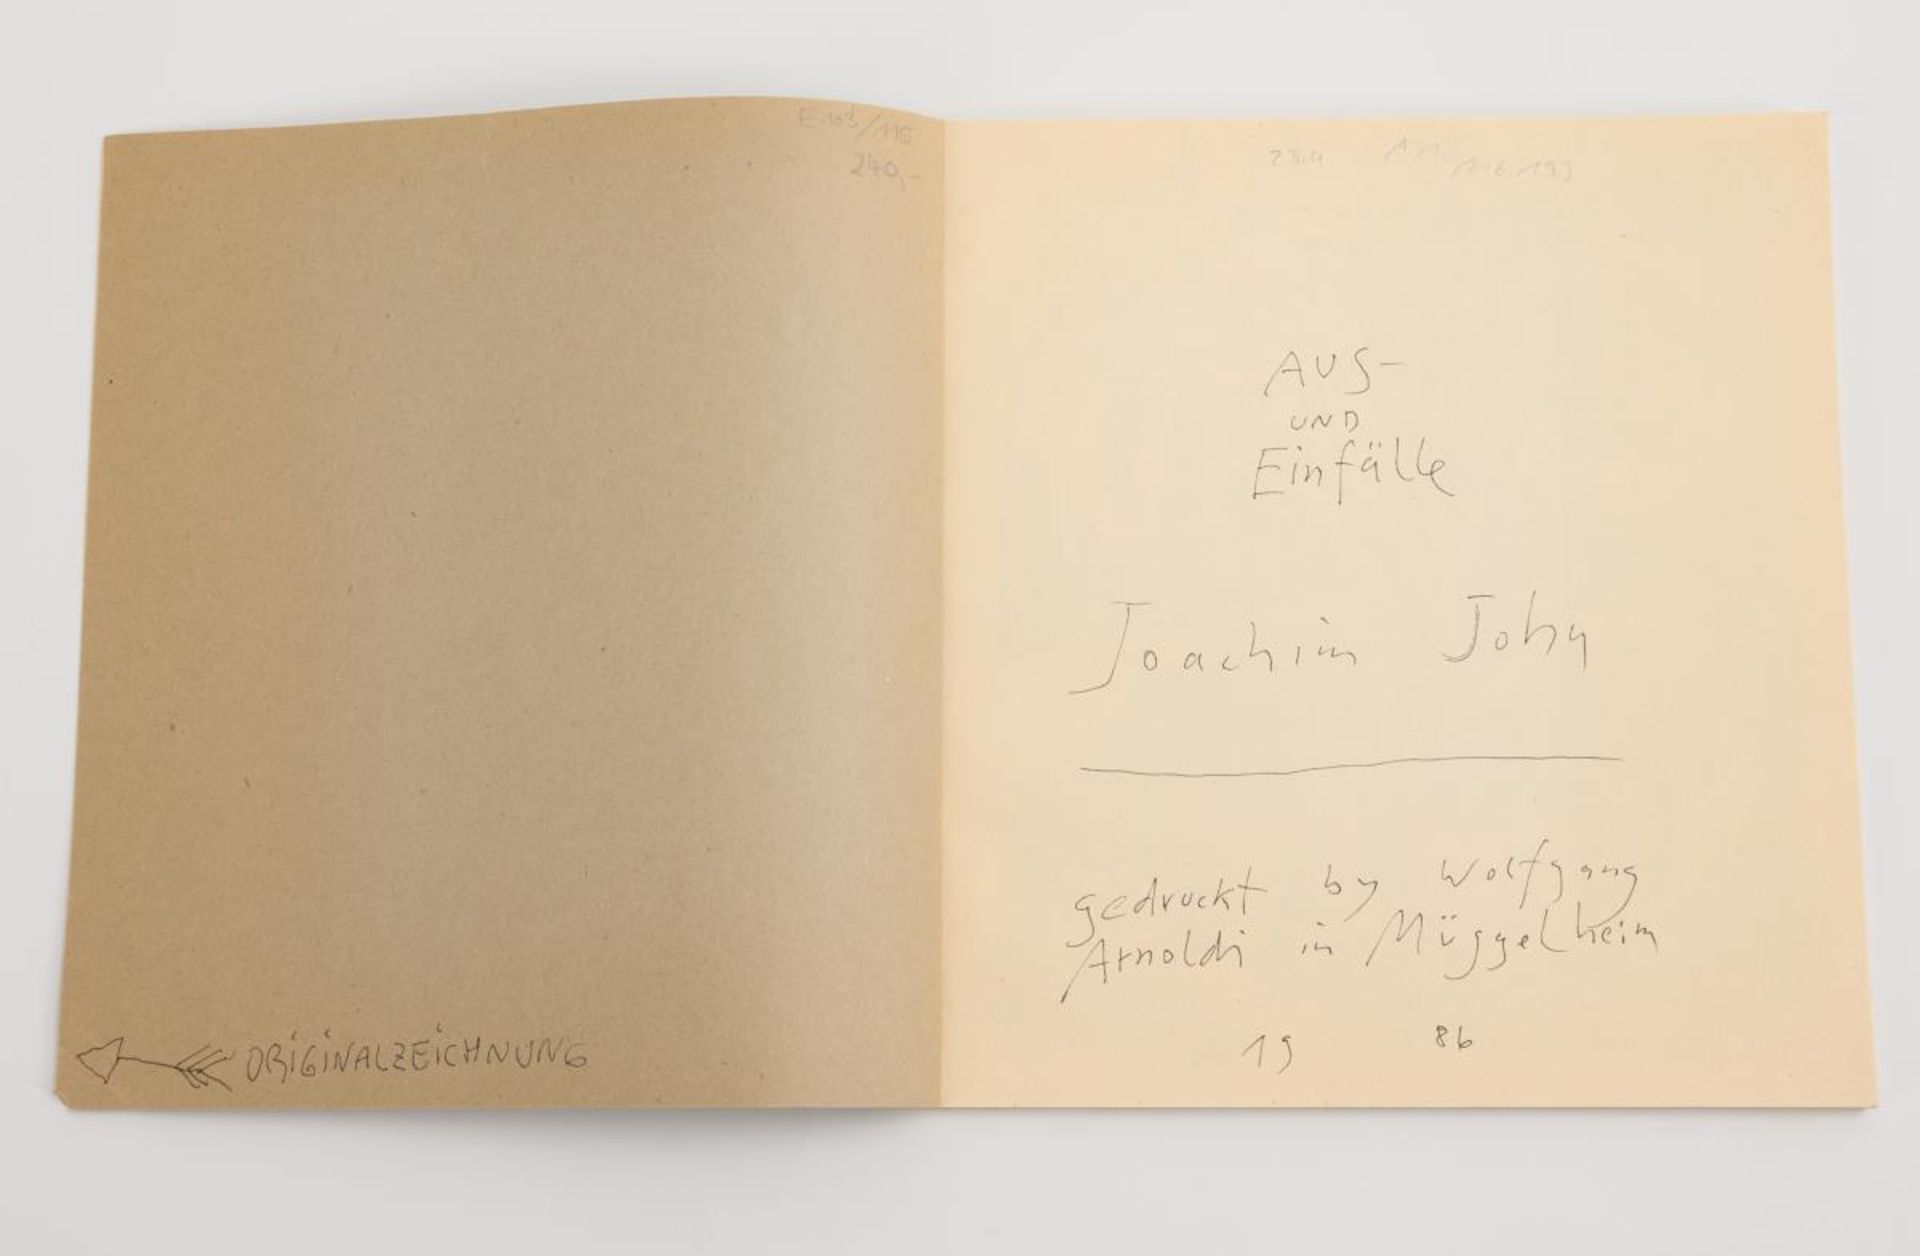 JOHN, Joachim (1933 Tetschen - 2018 Neu Frauenmark). 2 seltene Künstlerbücher: "Aus- und Einfäl... - Image 2 of 8